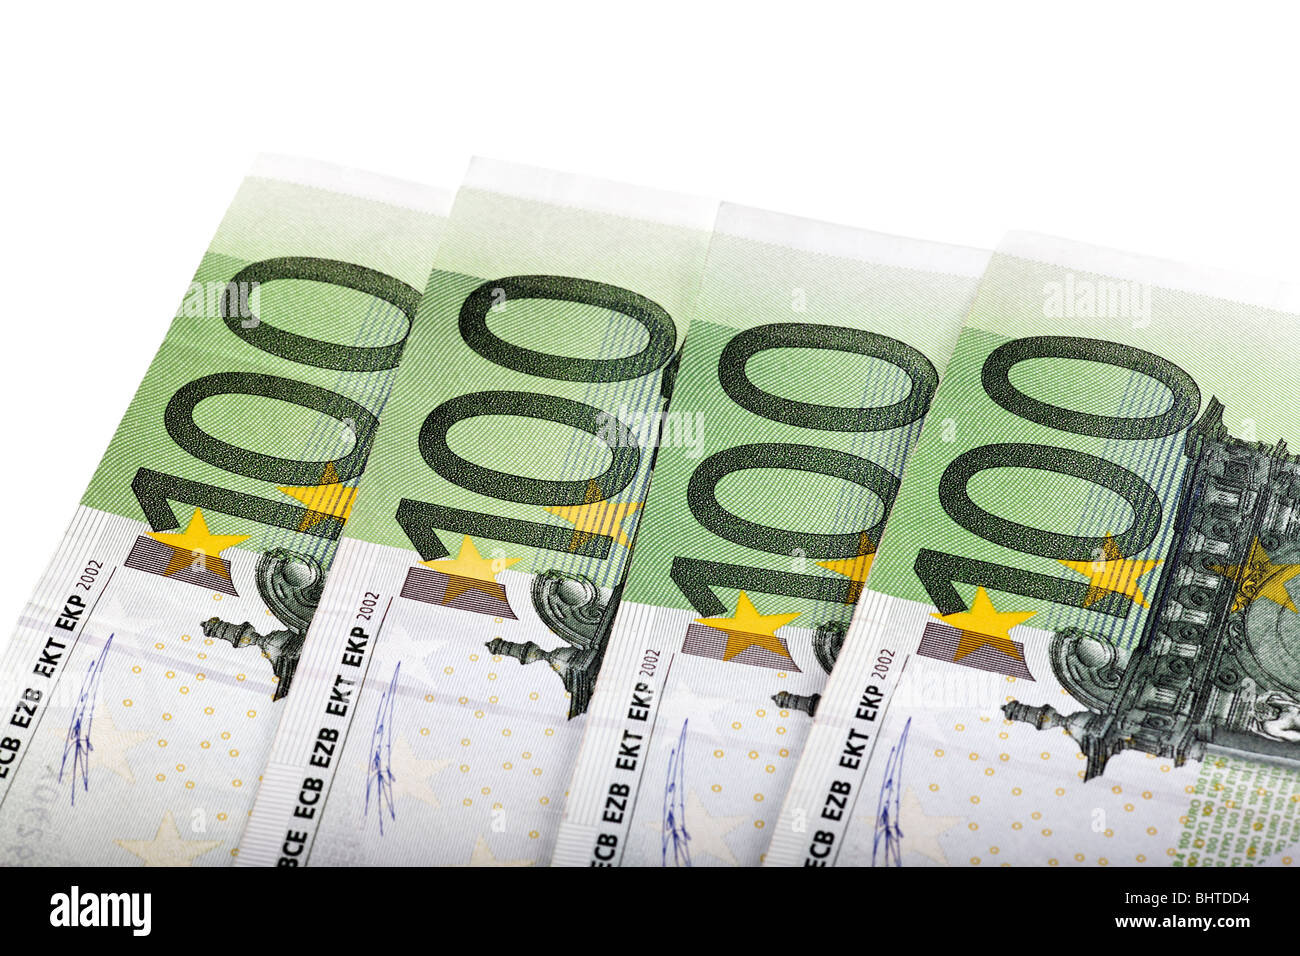 Banknotes, 100 Euro bills Stock Photo